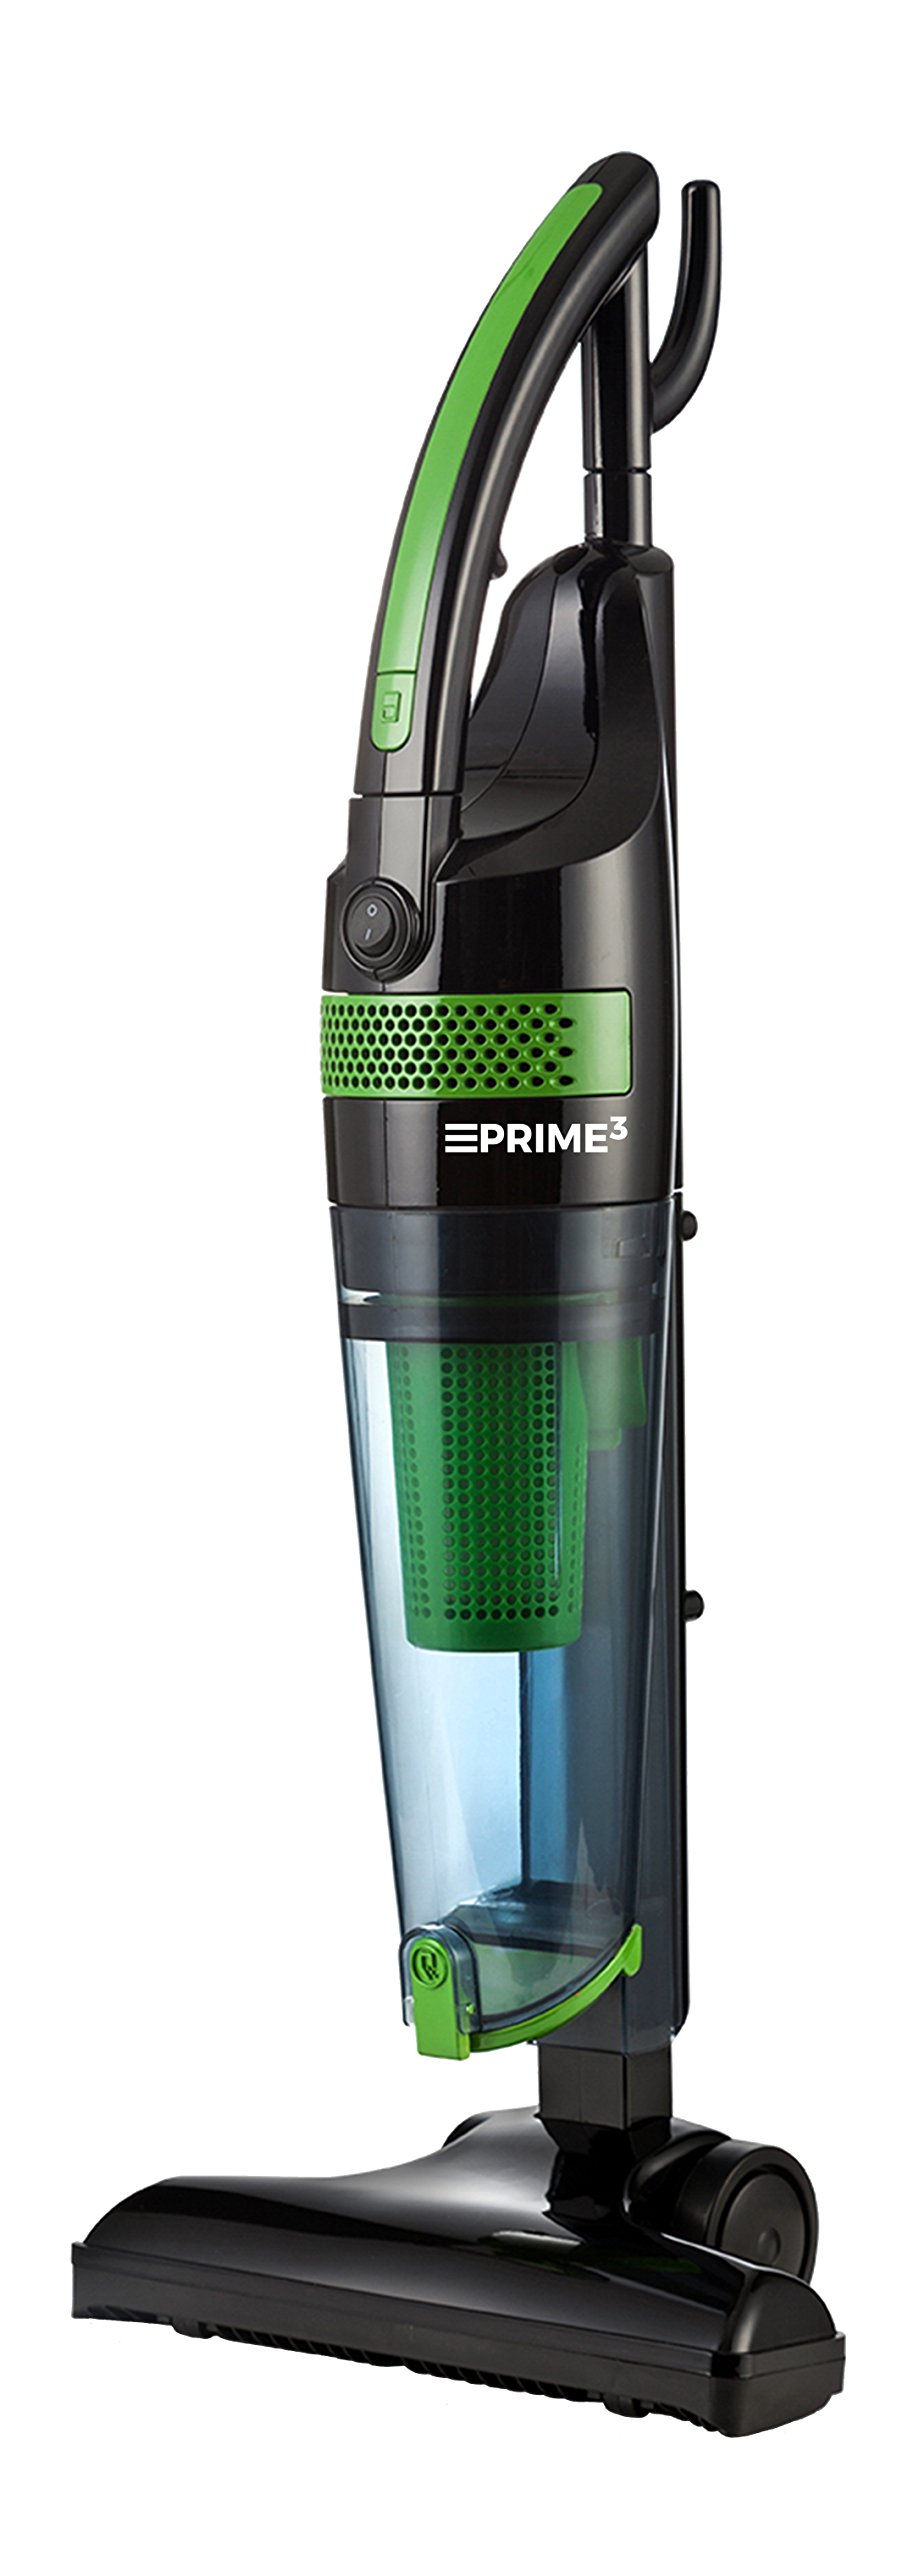 Vacuum Cleaner Prime3 Svc11